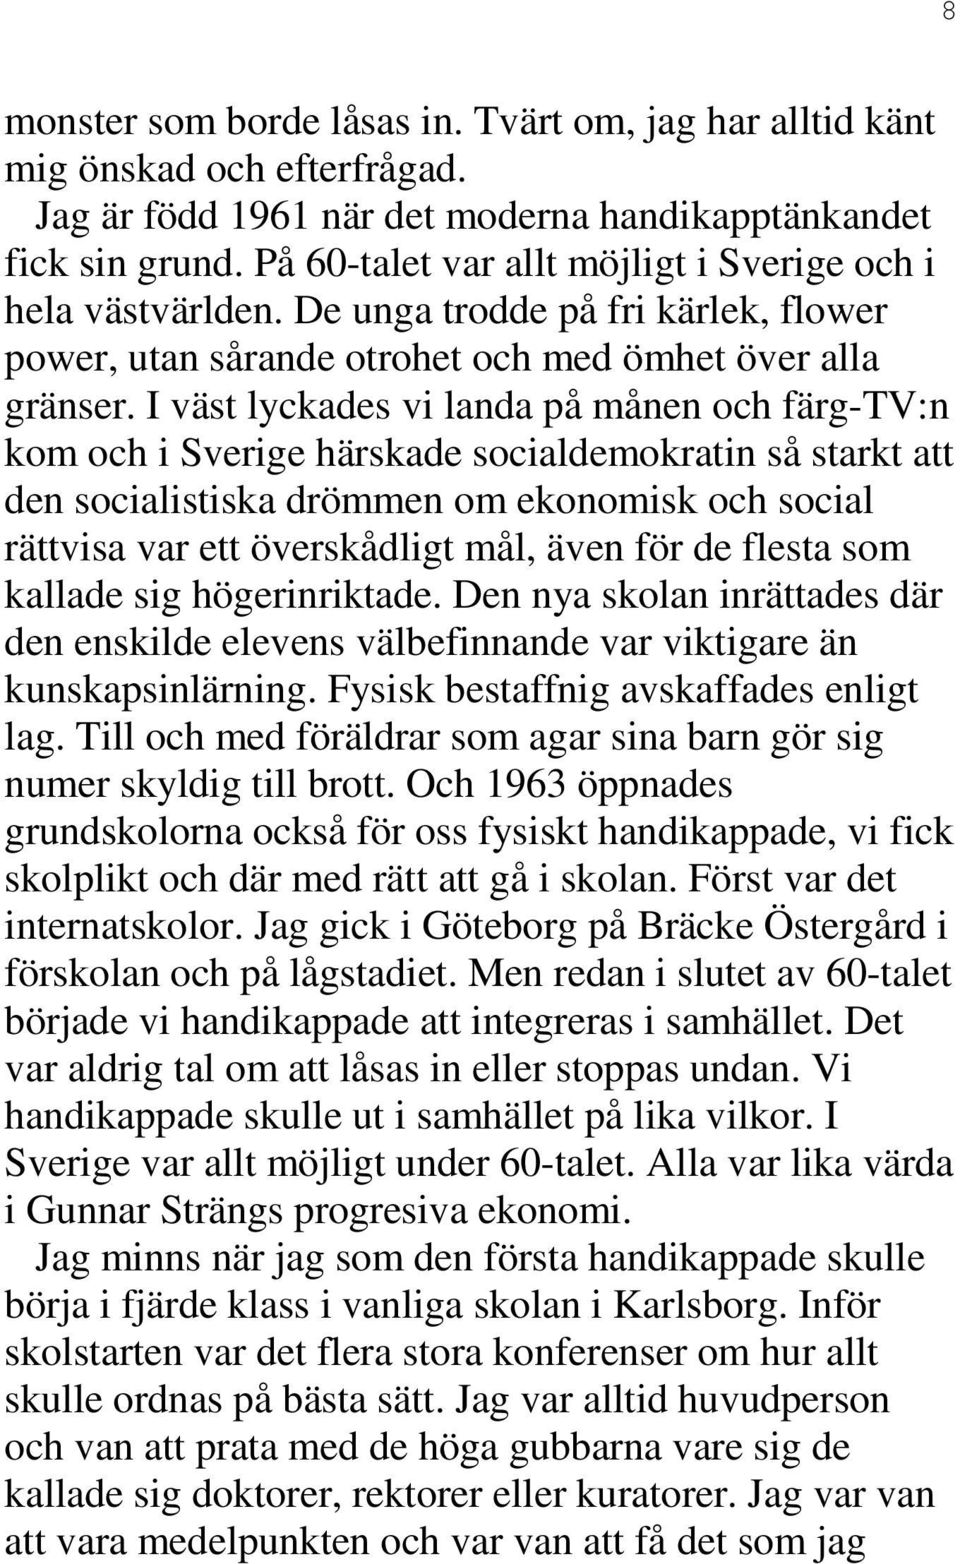 I väst lyckades vi landa på månen och färg-tv:n kom och i Sverige härskade socialdemokratin så starkt att den socialistiska drömmen om ekonomisk och social rättvisa var ett överskådligt mål, även för